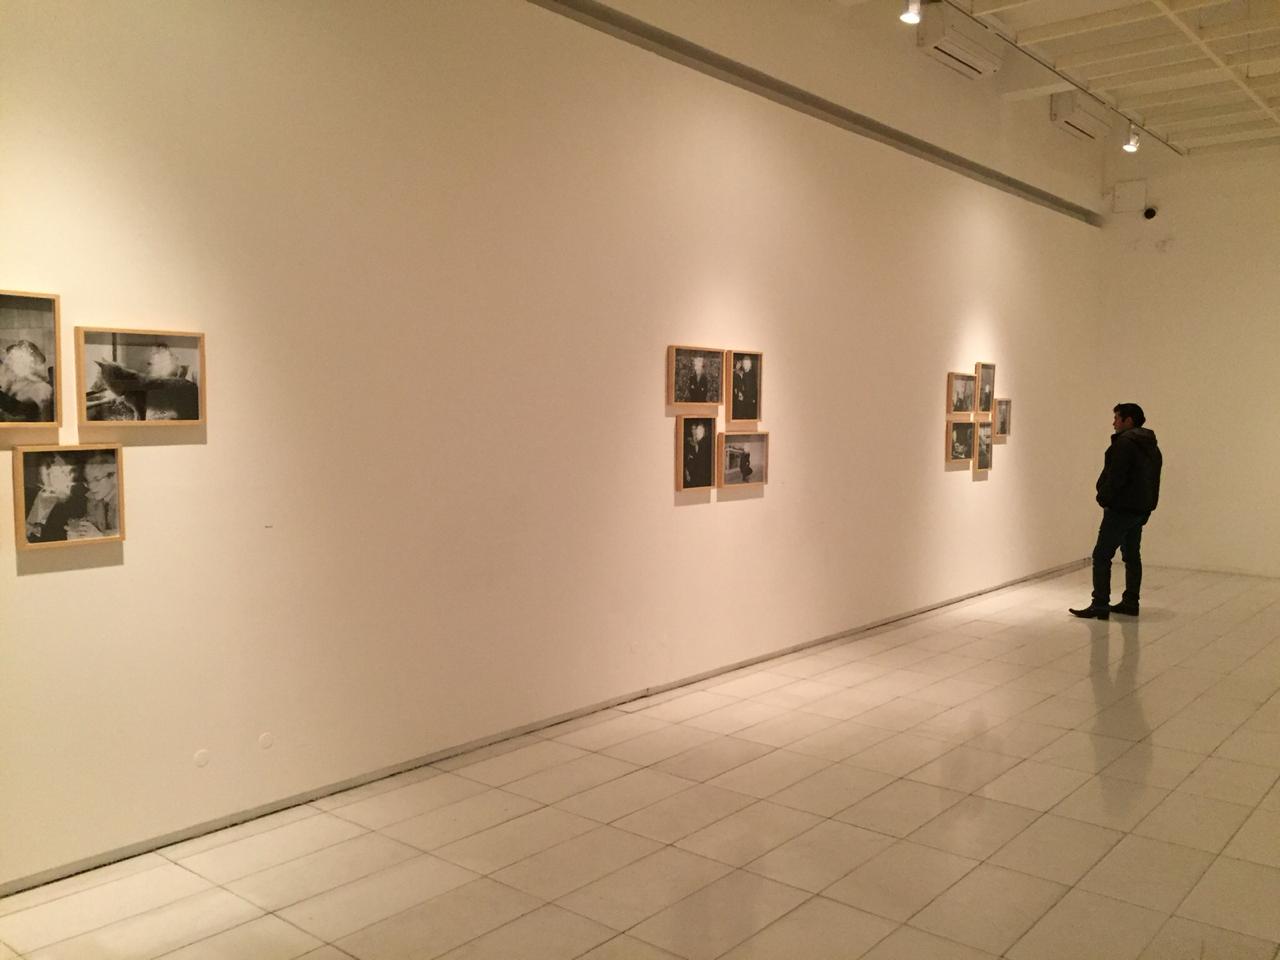 Aldo Museo de Arte Contemporáneo